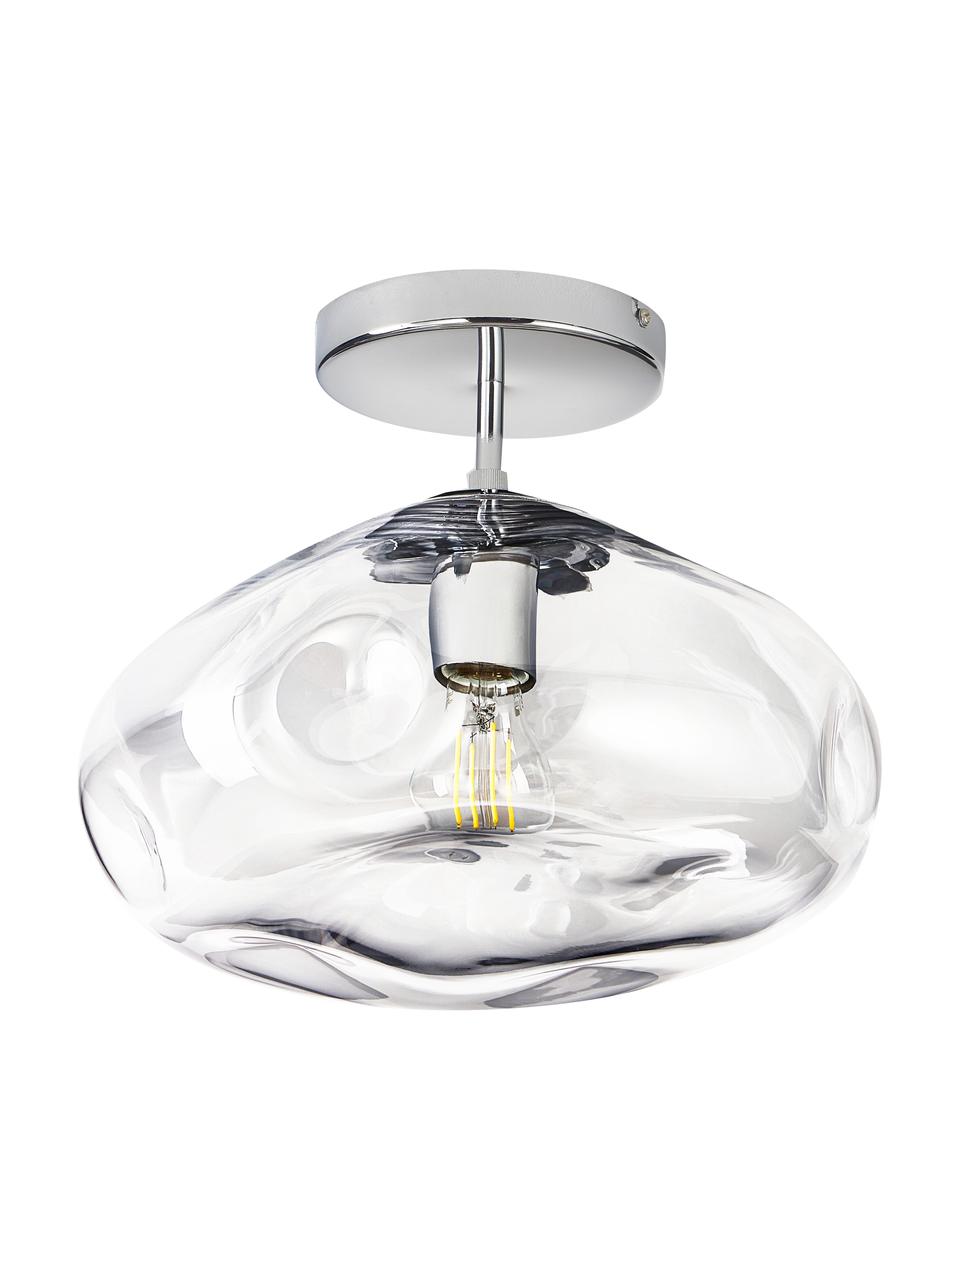 Lampada da soffitto Amora, Paralume: vetro, Baldacchino: metallo spazzolato, Trasparente, cromato, Ø 35 x Alt. 28 cm